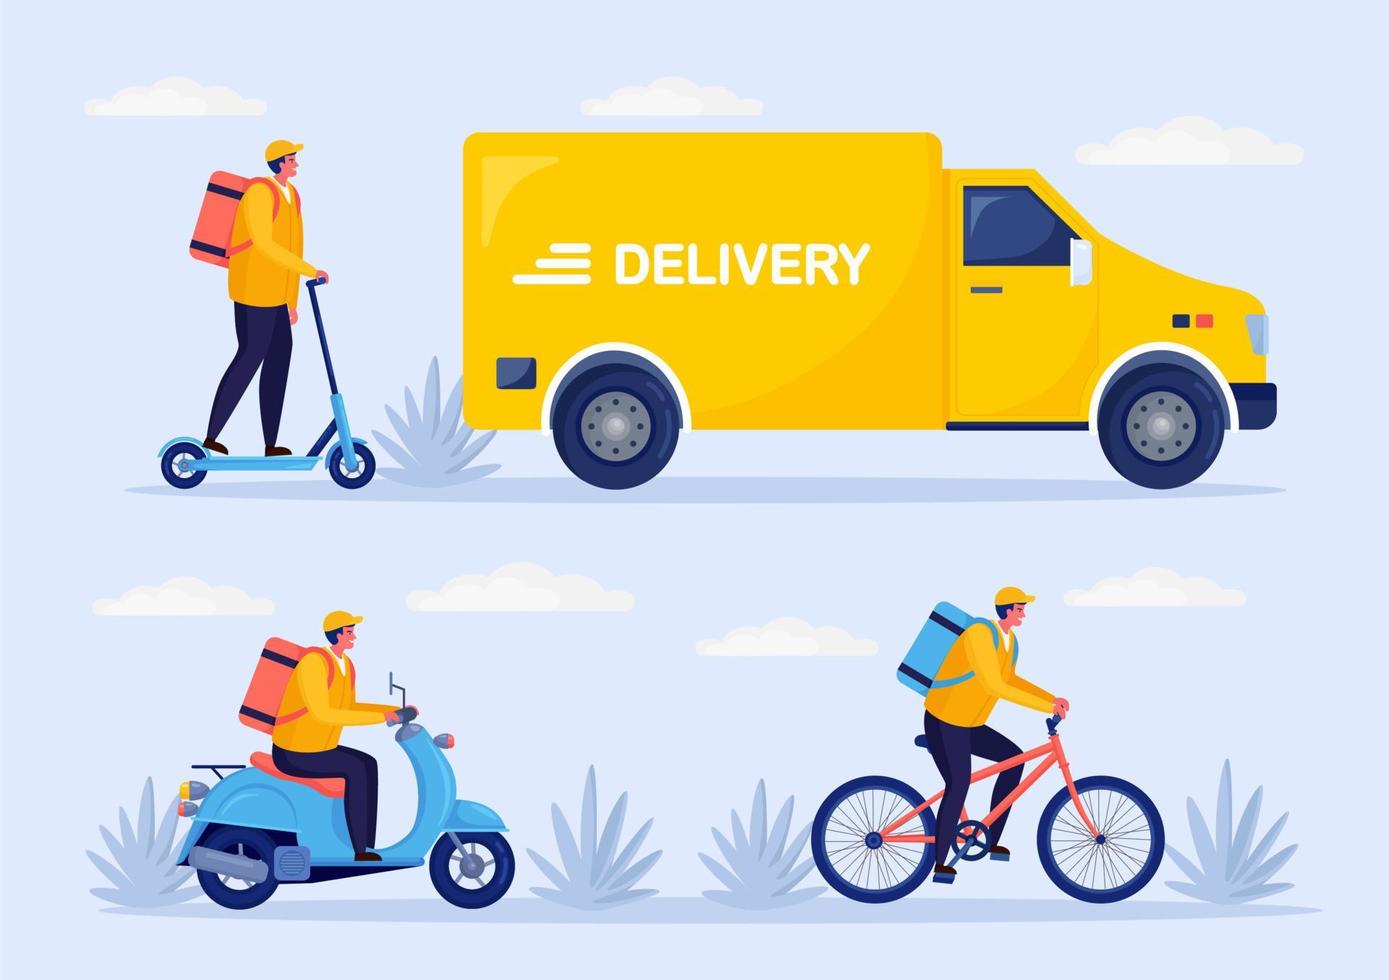 servizio di consegna veloce gratuito in bicicletta, scooter, monopattino, camion, furgone. il corriere consegna l'ordine del cibo in auto. disegno vettoriale